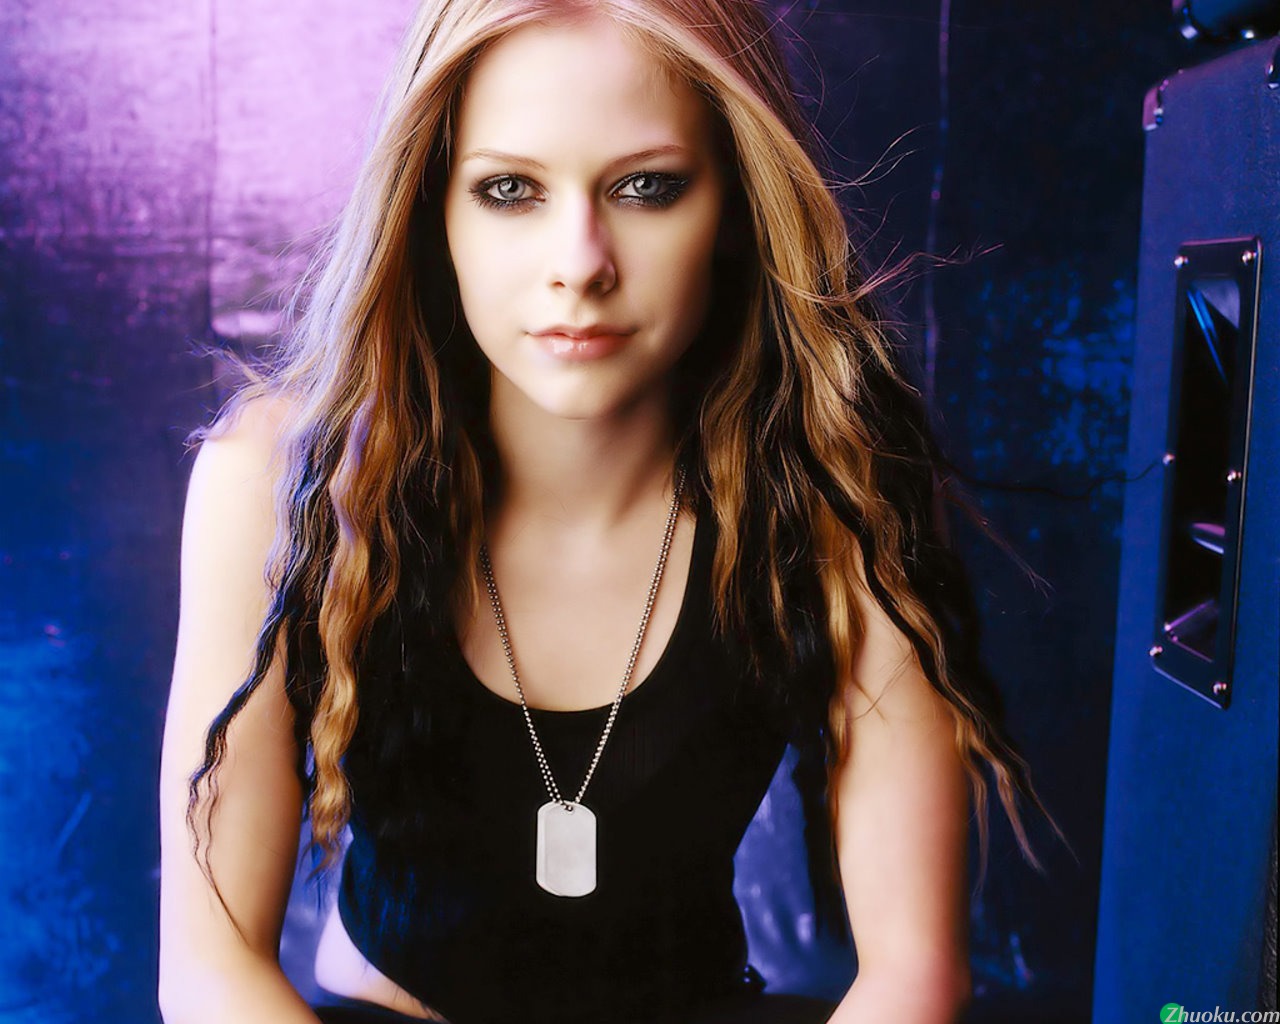 壁纸1280x1024艾薇儿 Avril Lavigne 壁纸30壁纸 艾薇儿 Avril Lavigne壁纸 艾薇儿 Avril Lavigne图片 艾薇儿 Avril Lavigne素材 明星壁纸 明星图库 明星图片素材桌面壁纸